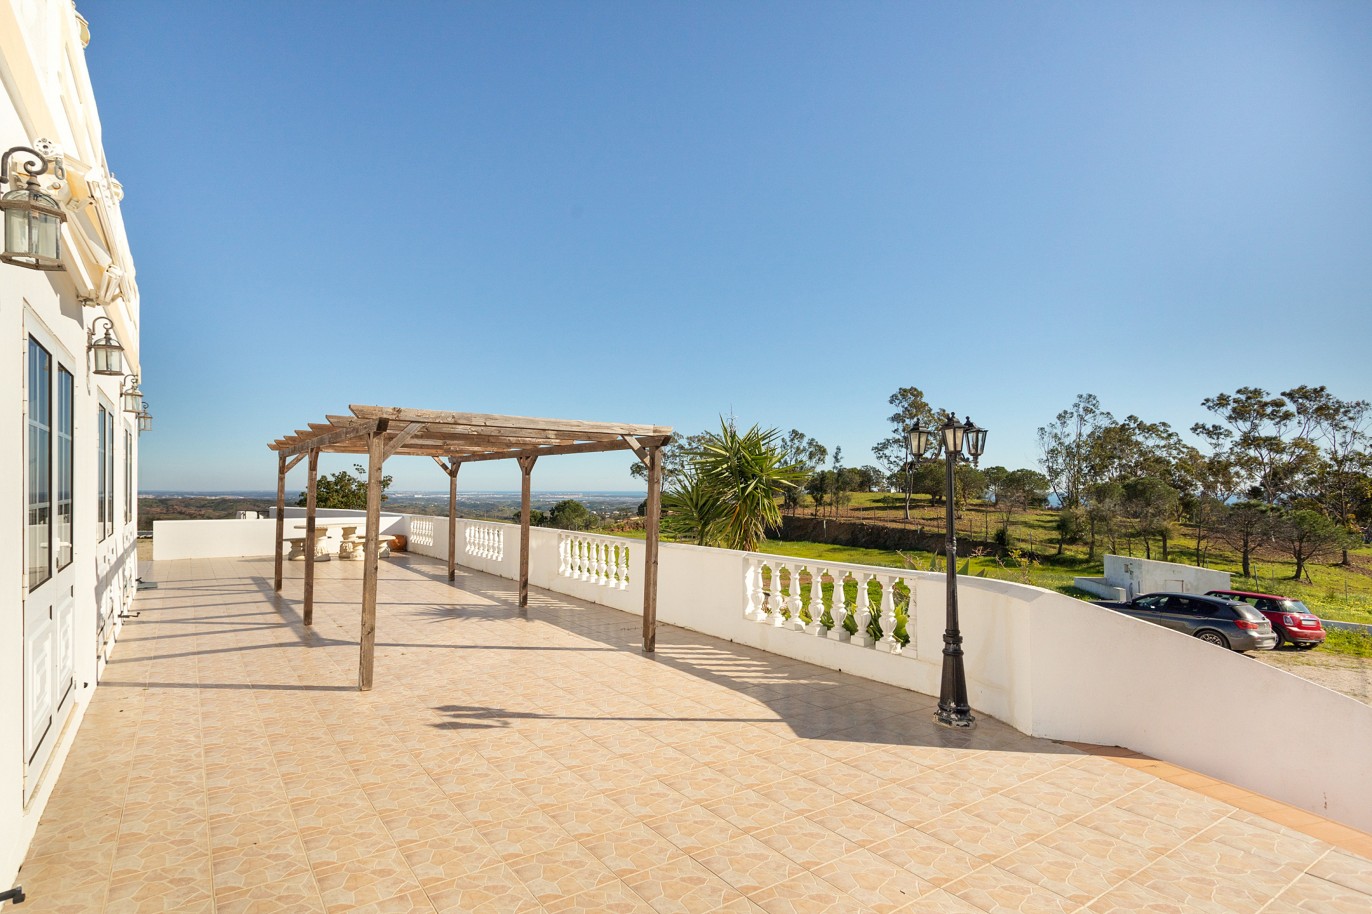 Moradia isolada com área comercial, para venda em Tavira, Algarve_215986